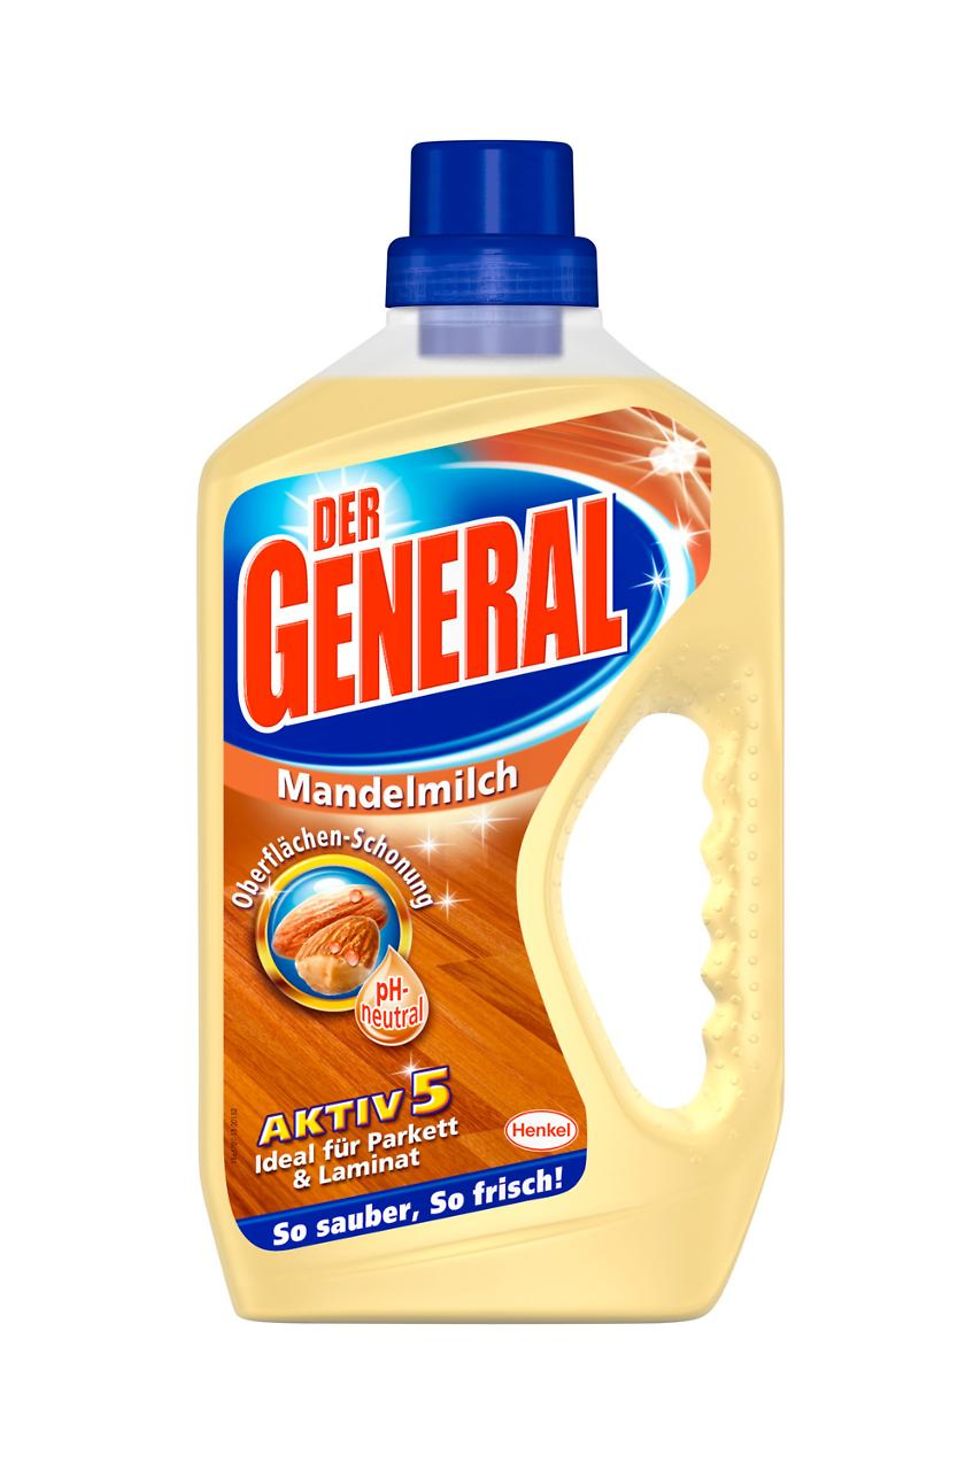 Der General Aktiv 5 „Mandelmilch“ 